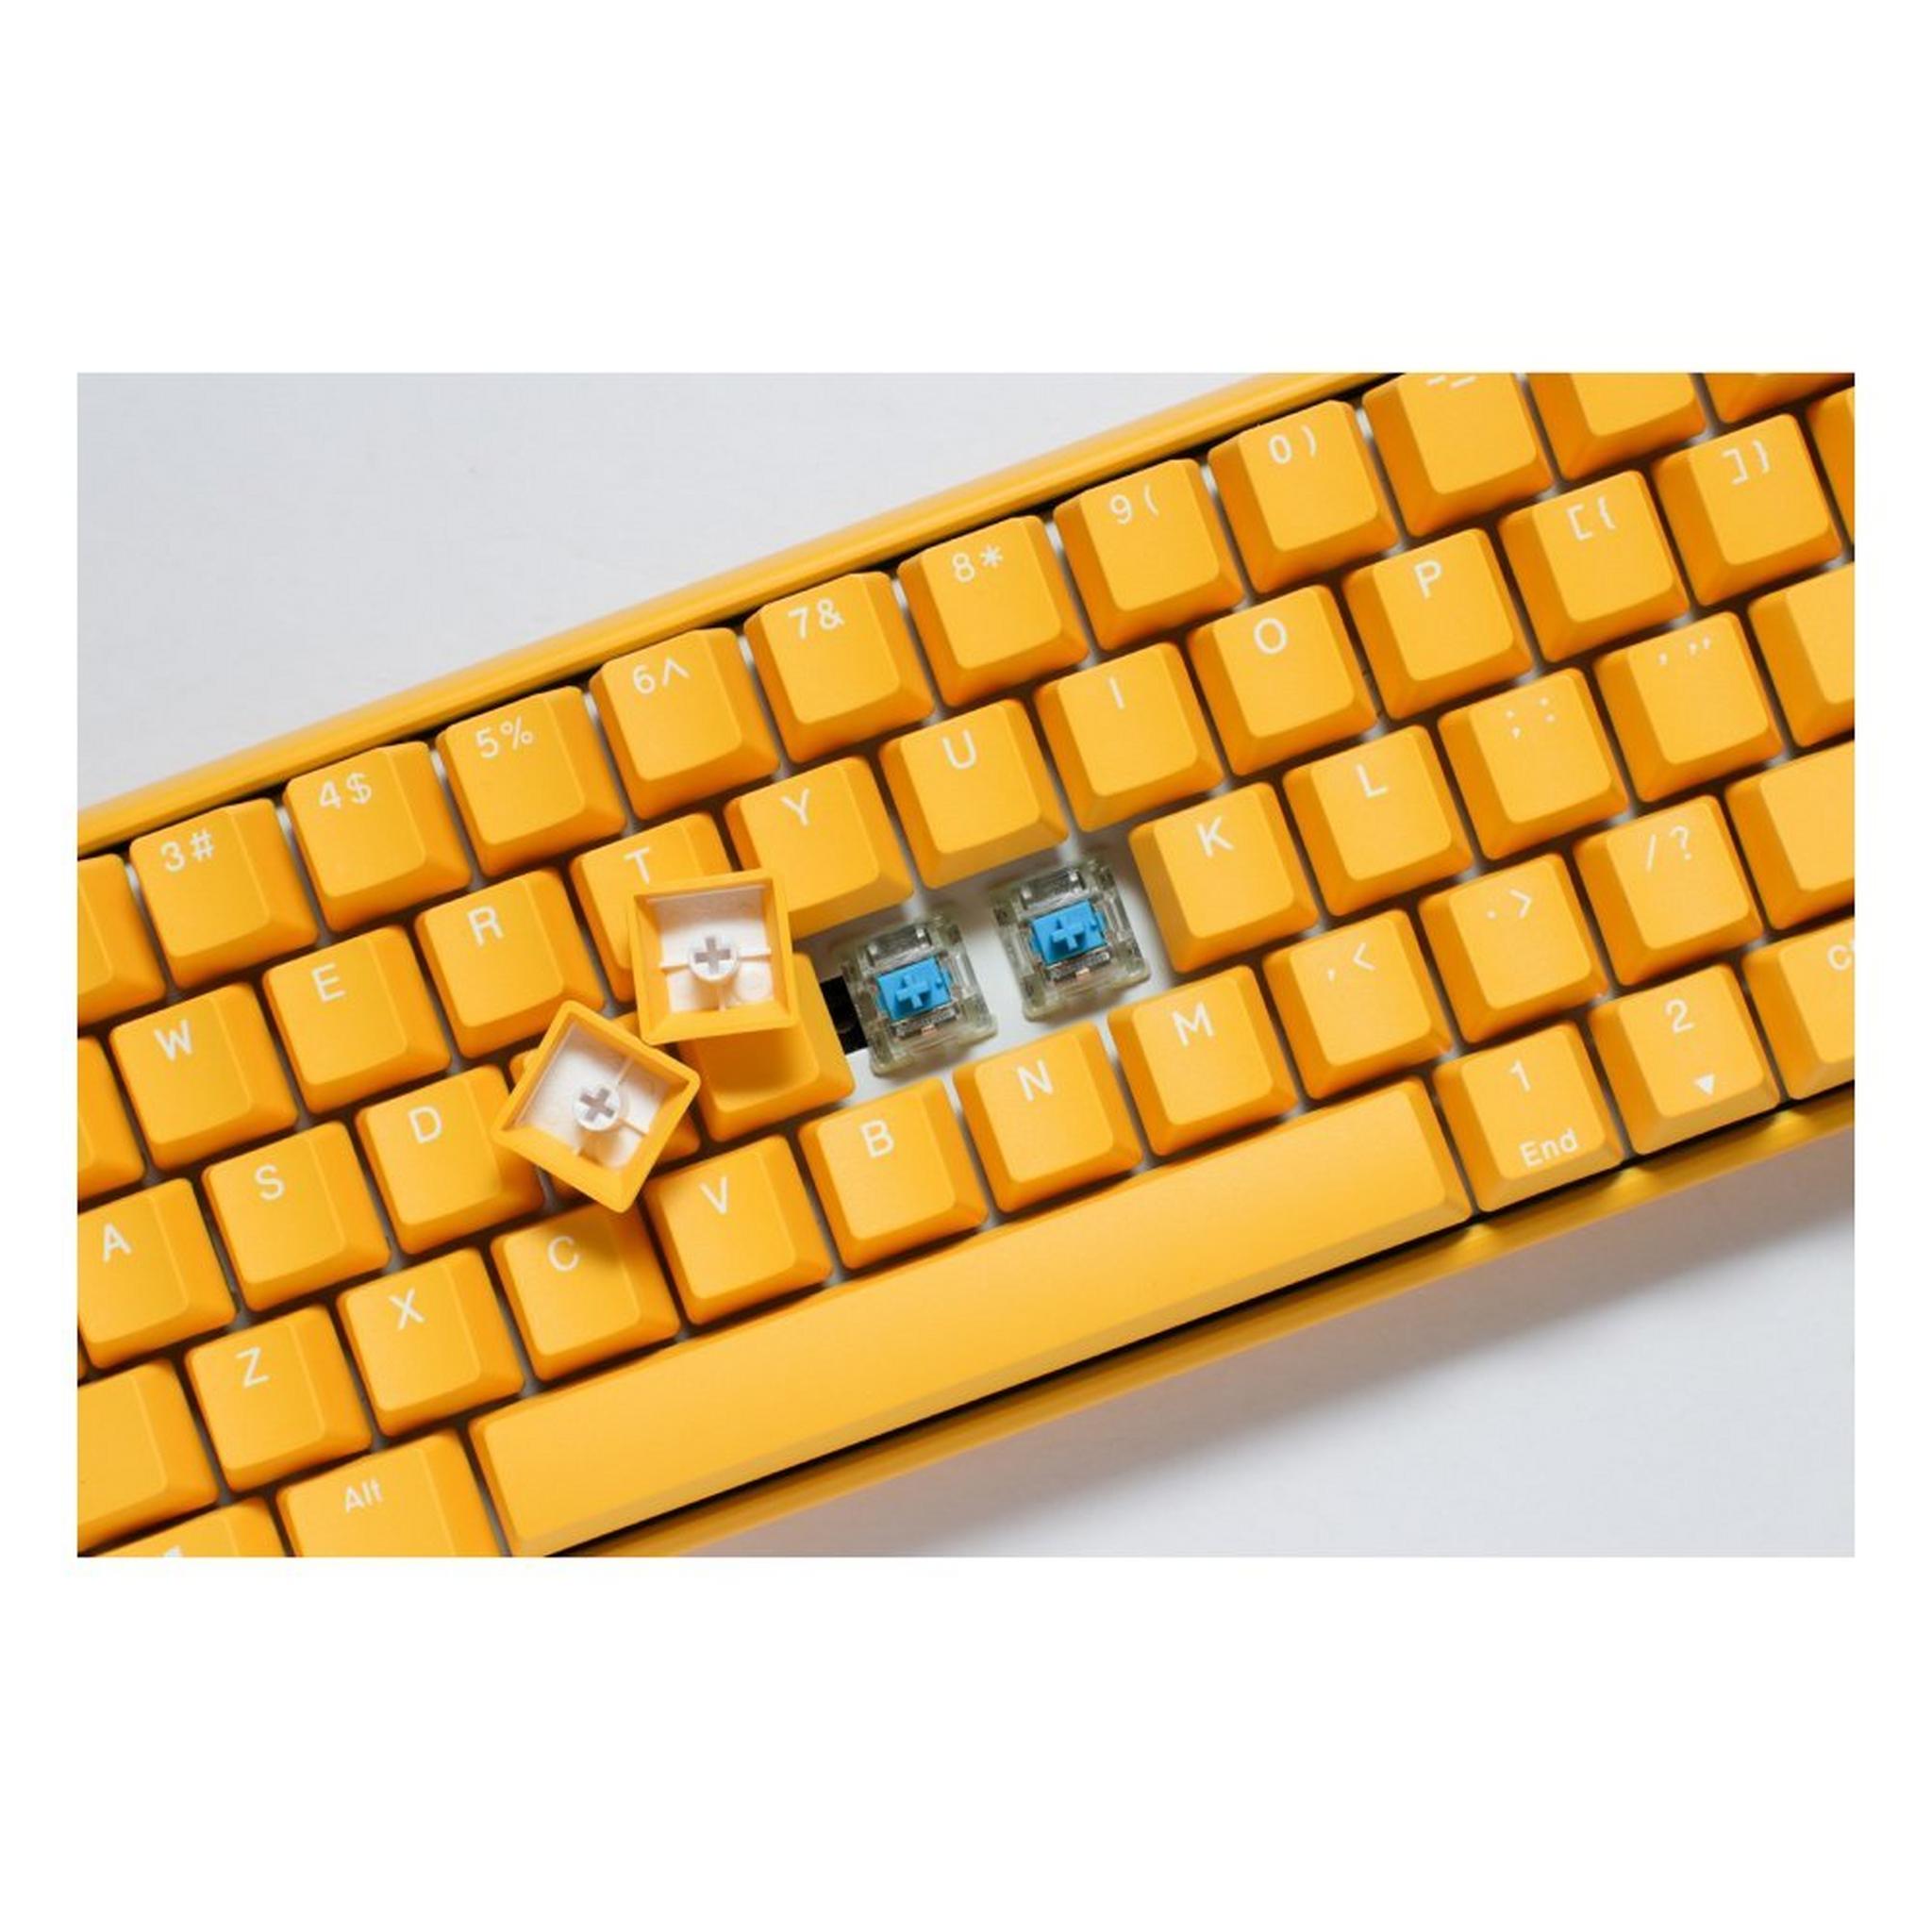 لوحة المفاتيح الميكانيكية دوكي ون 3 ميني داي بريك - أصفر